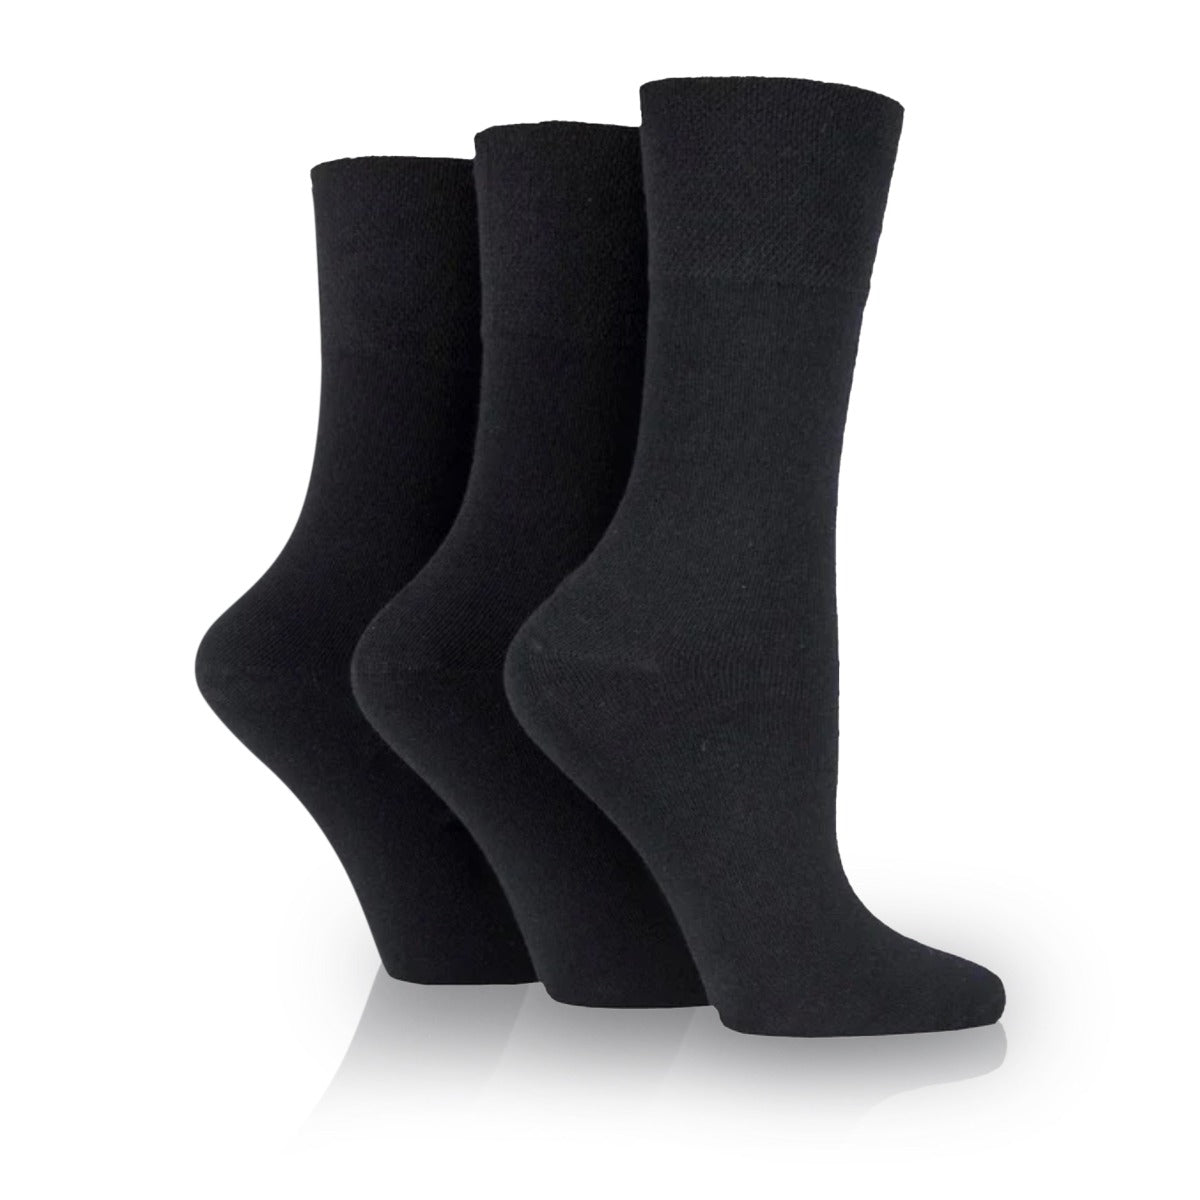 women's non binding socks in plain black